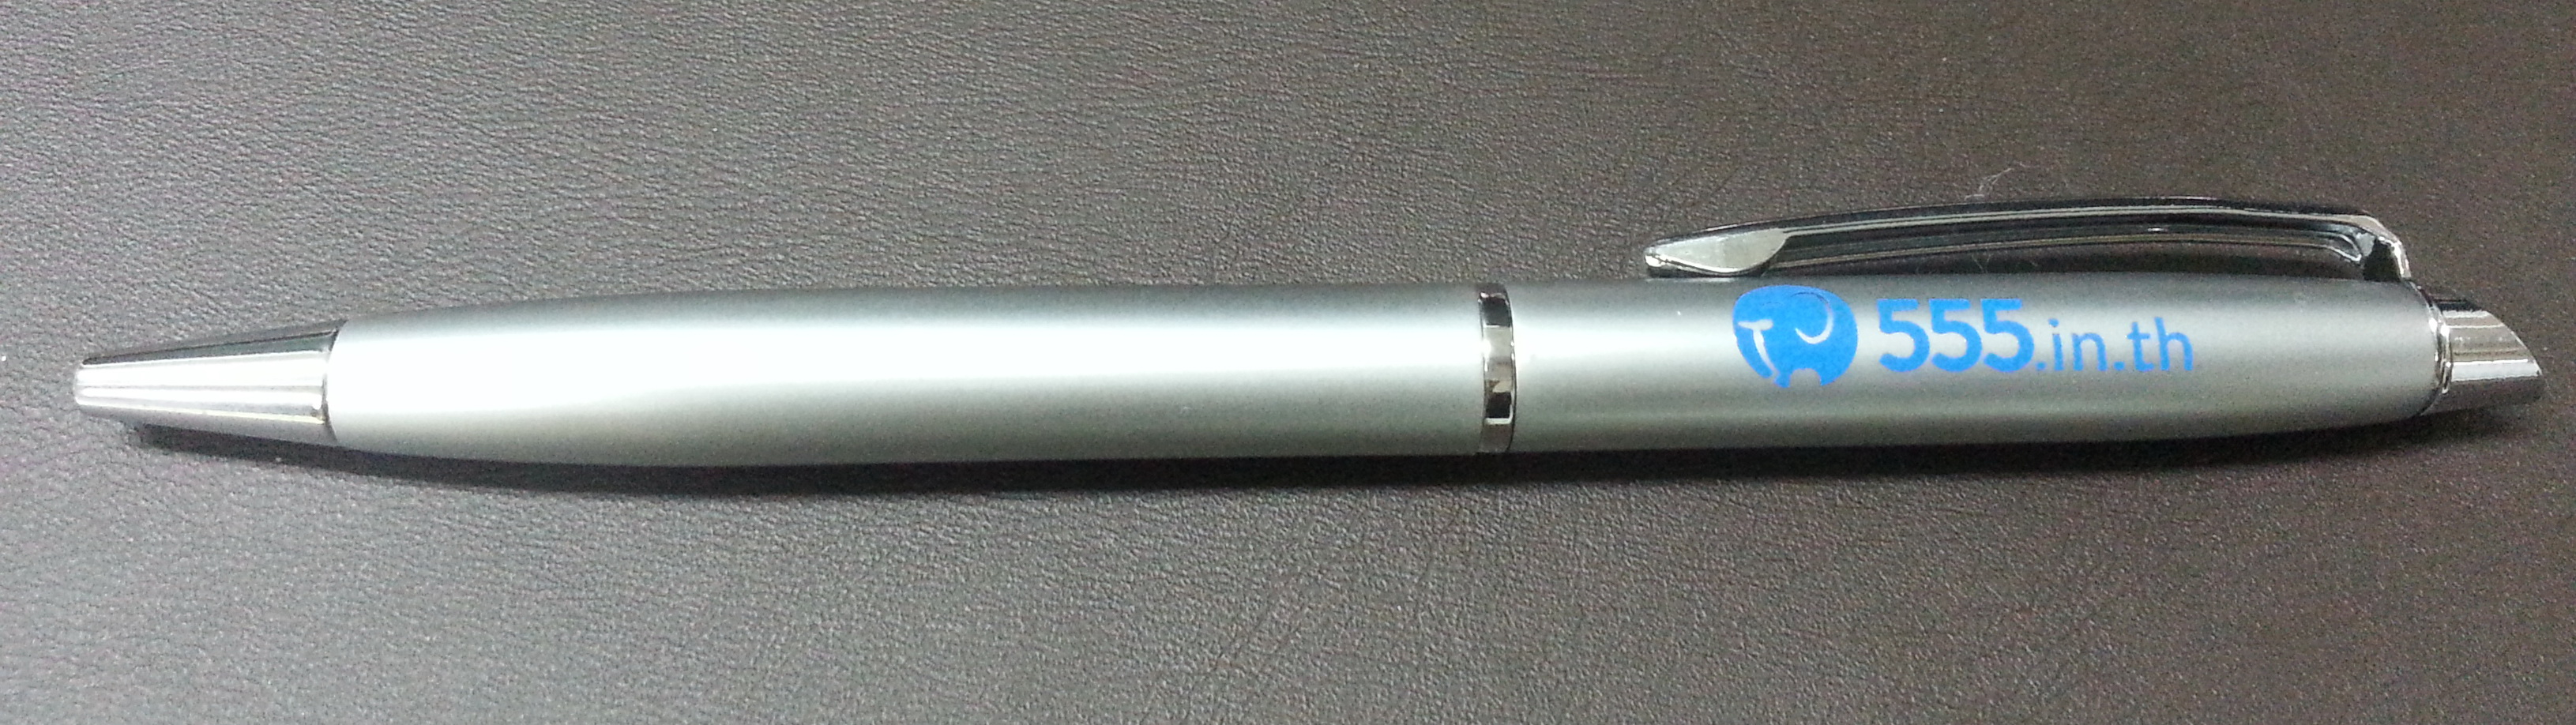 ปากกา 555